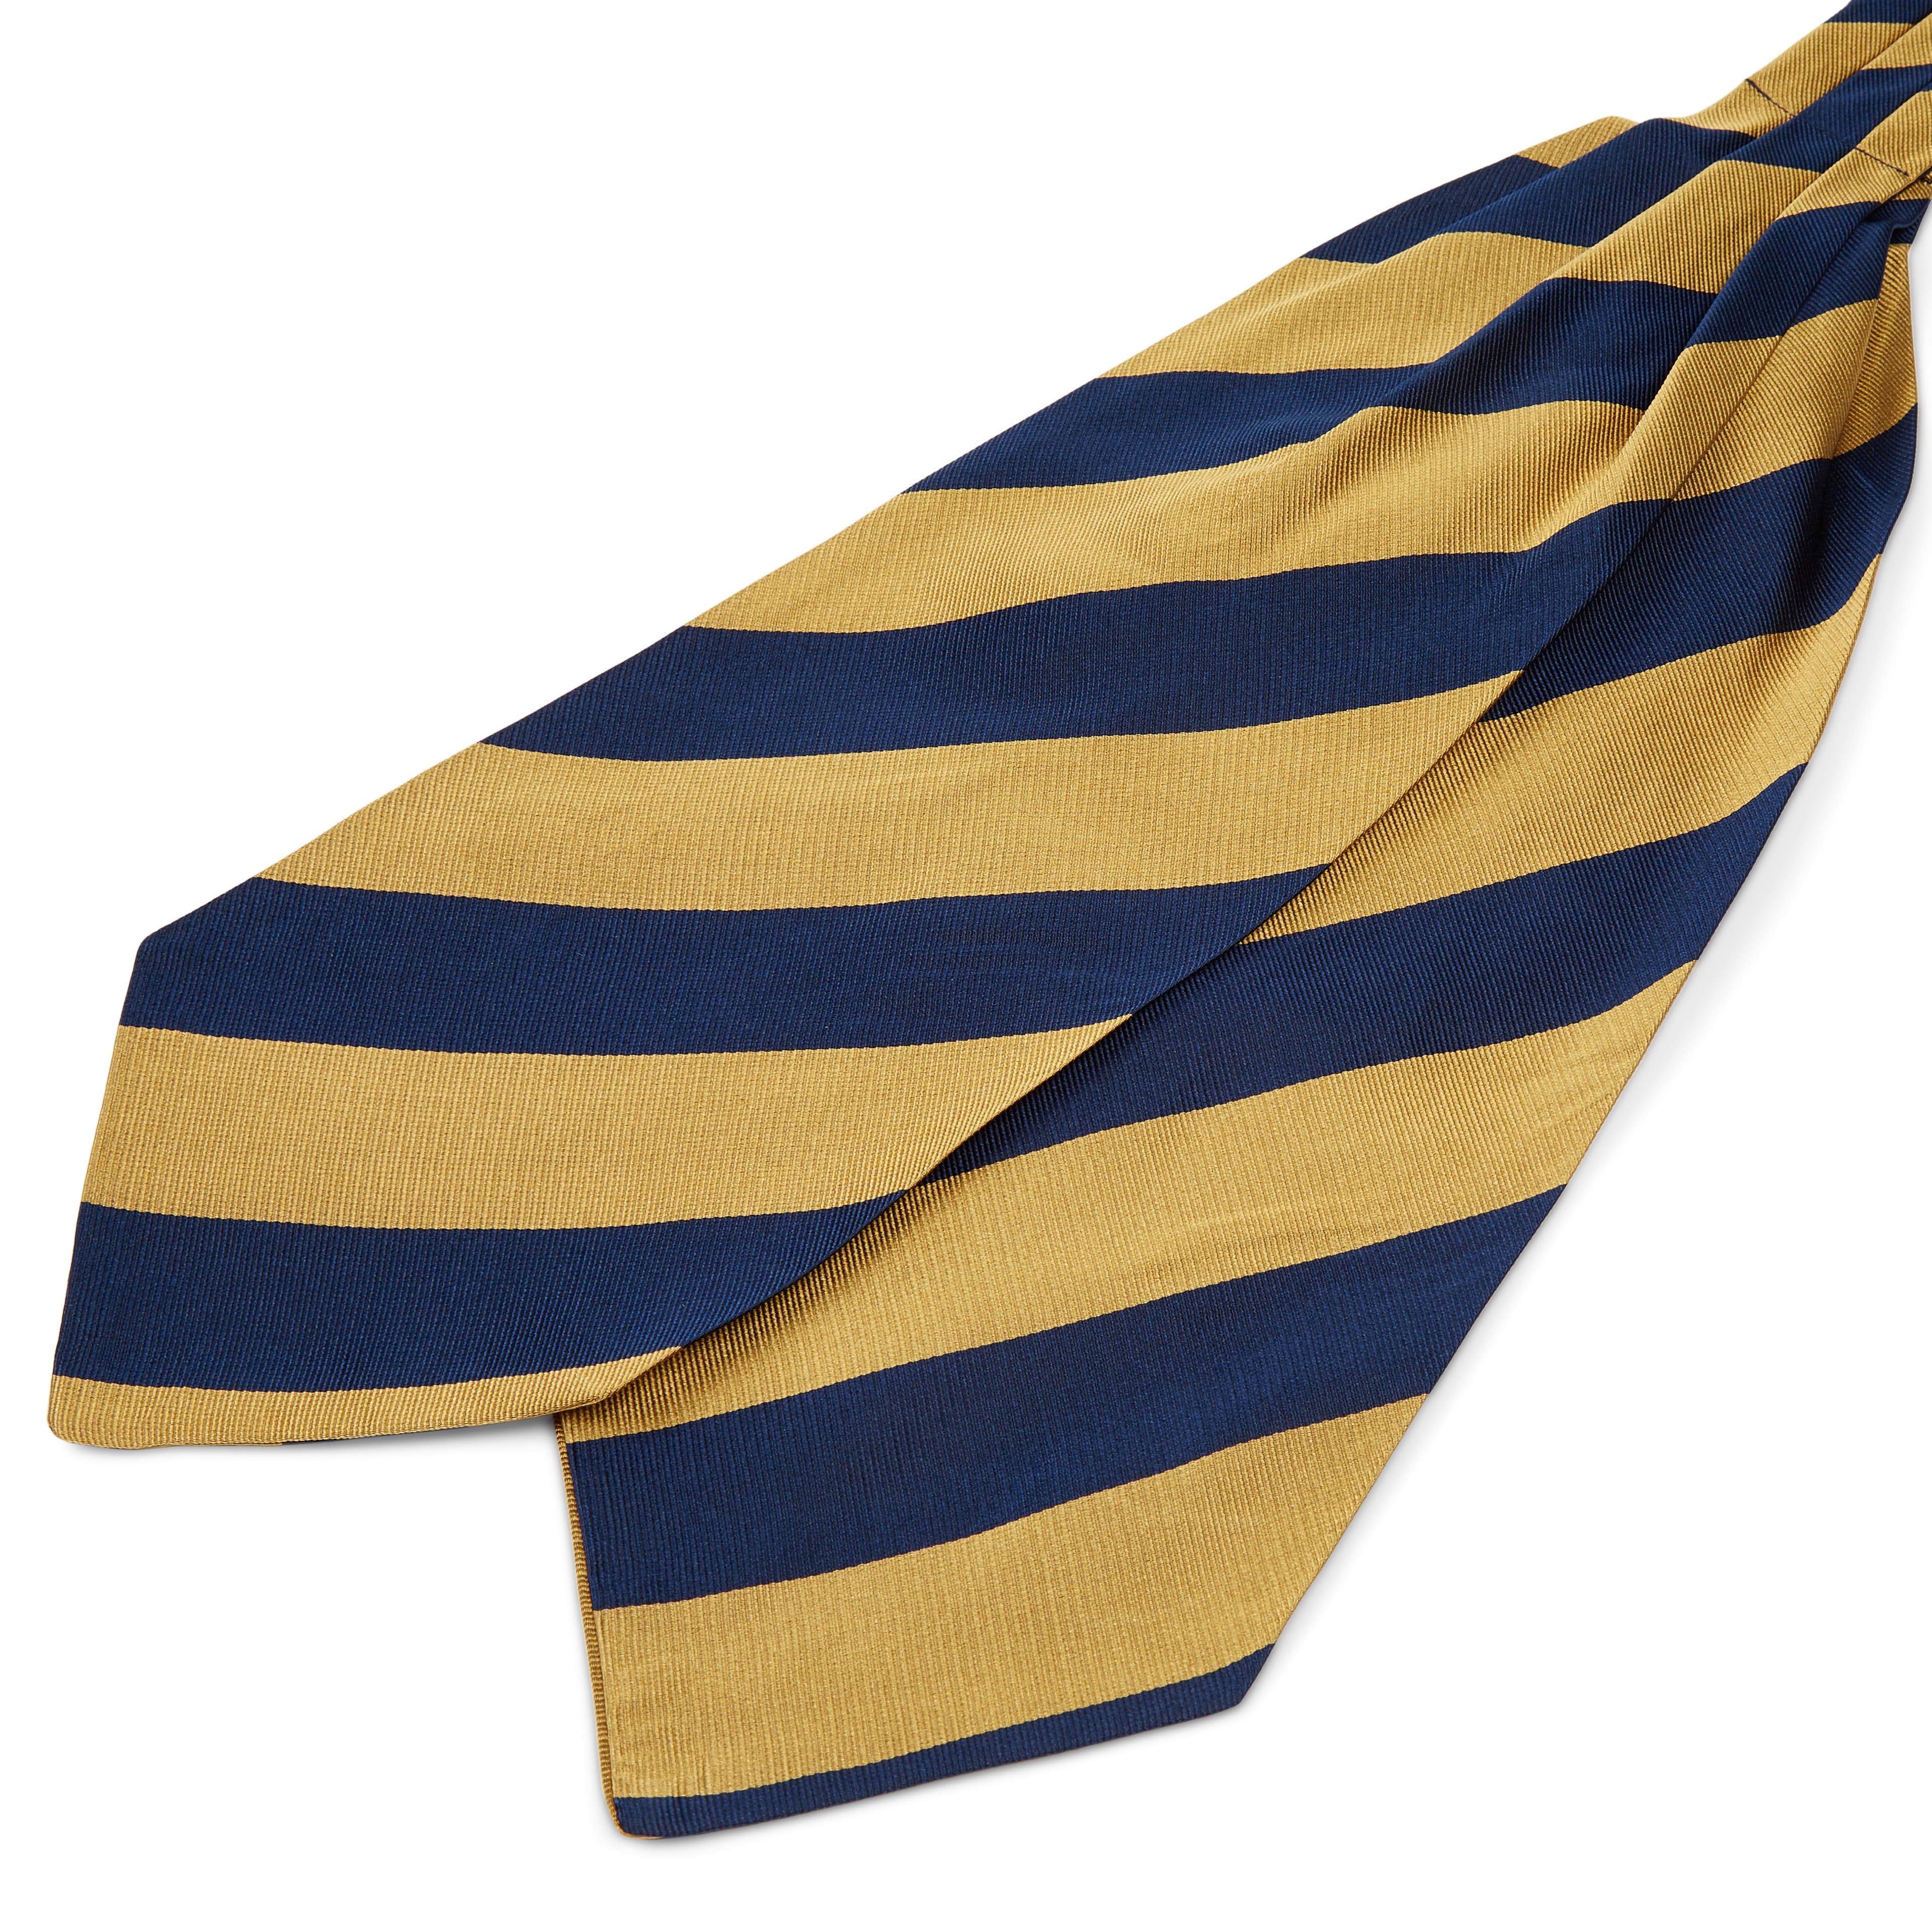 Arany-tengerészkék csíkos selyem kravátli